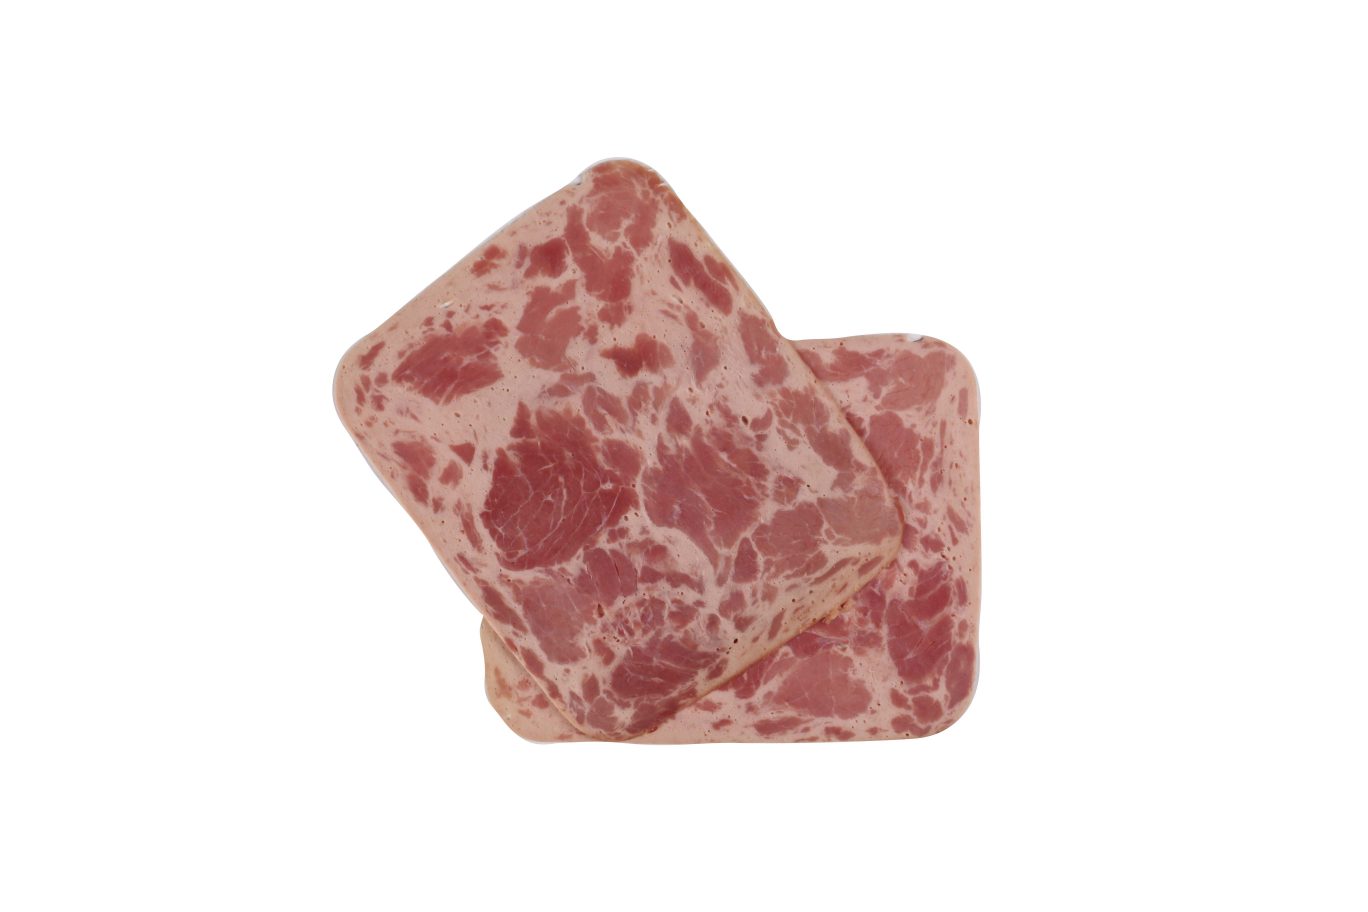 ژامبون گوشت نوروزی 90% گوشتیران 250g - ژامبون گوشت نوروزی 90% گوشتیران